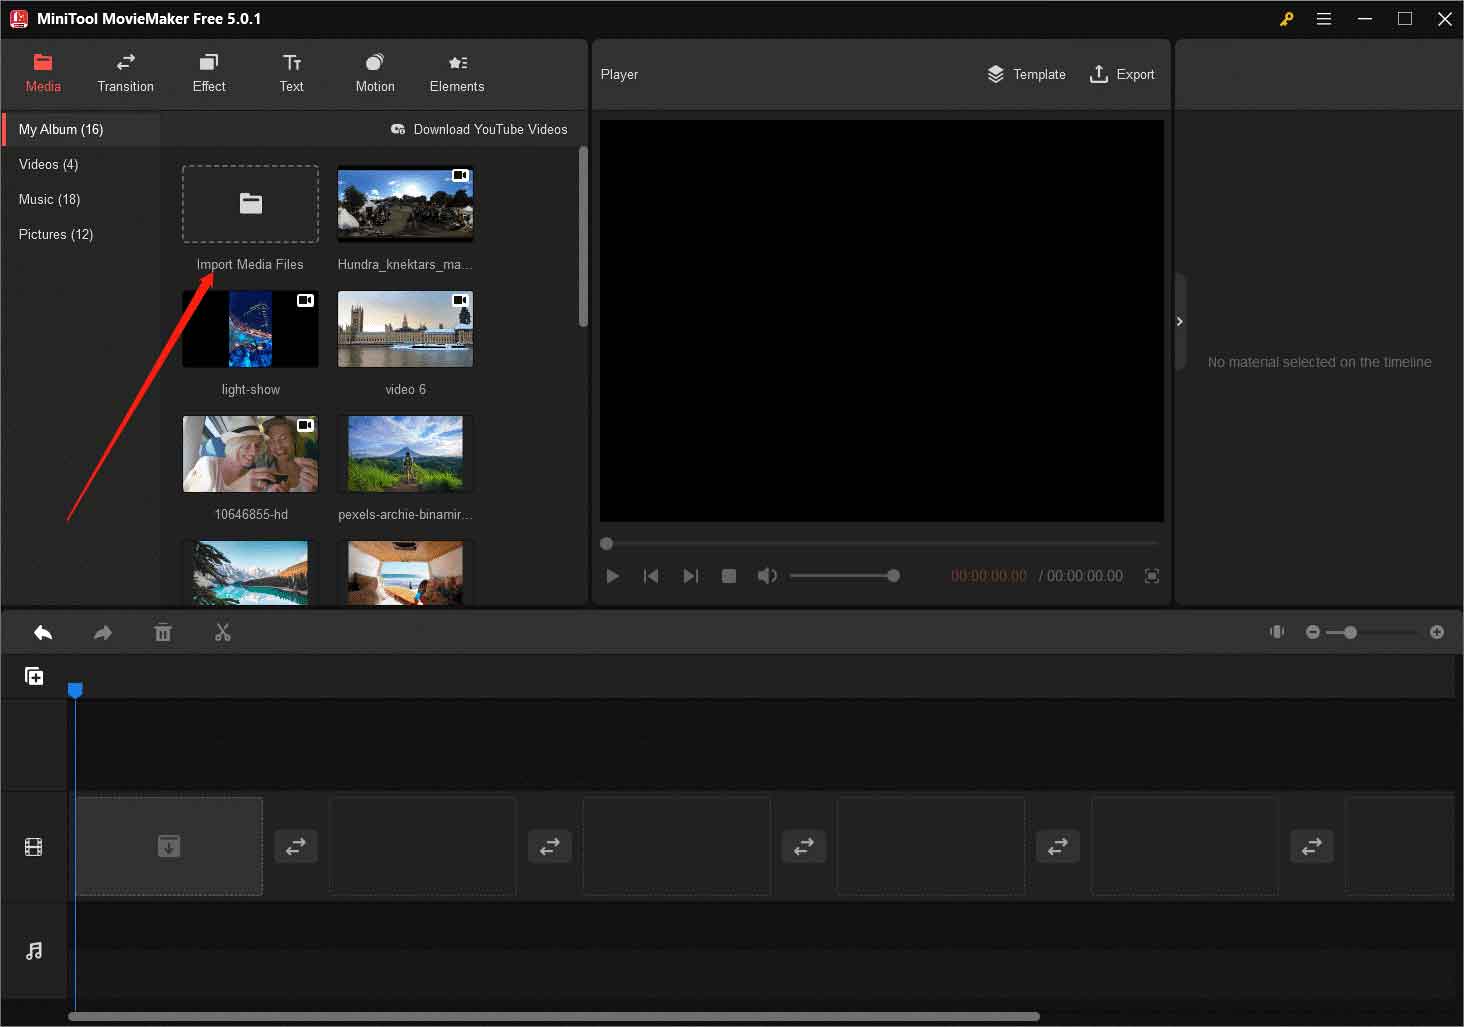 Fügen Sie MiniTool MovieMaker 360-Grad-Videos hinzu